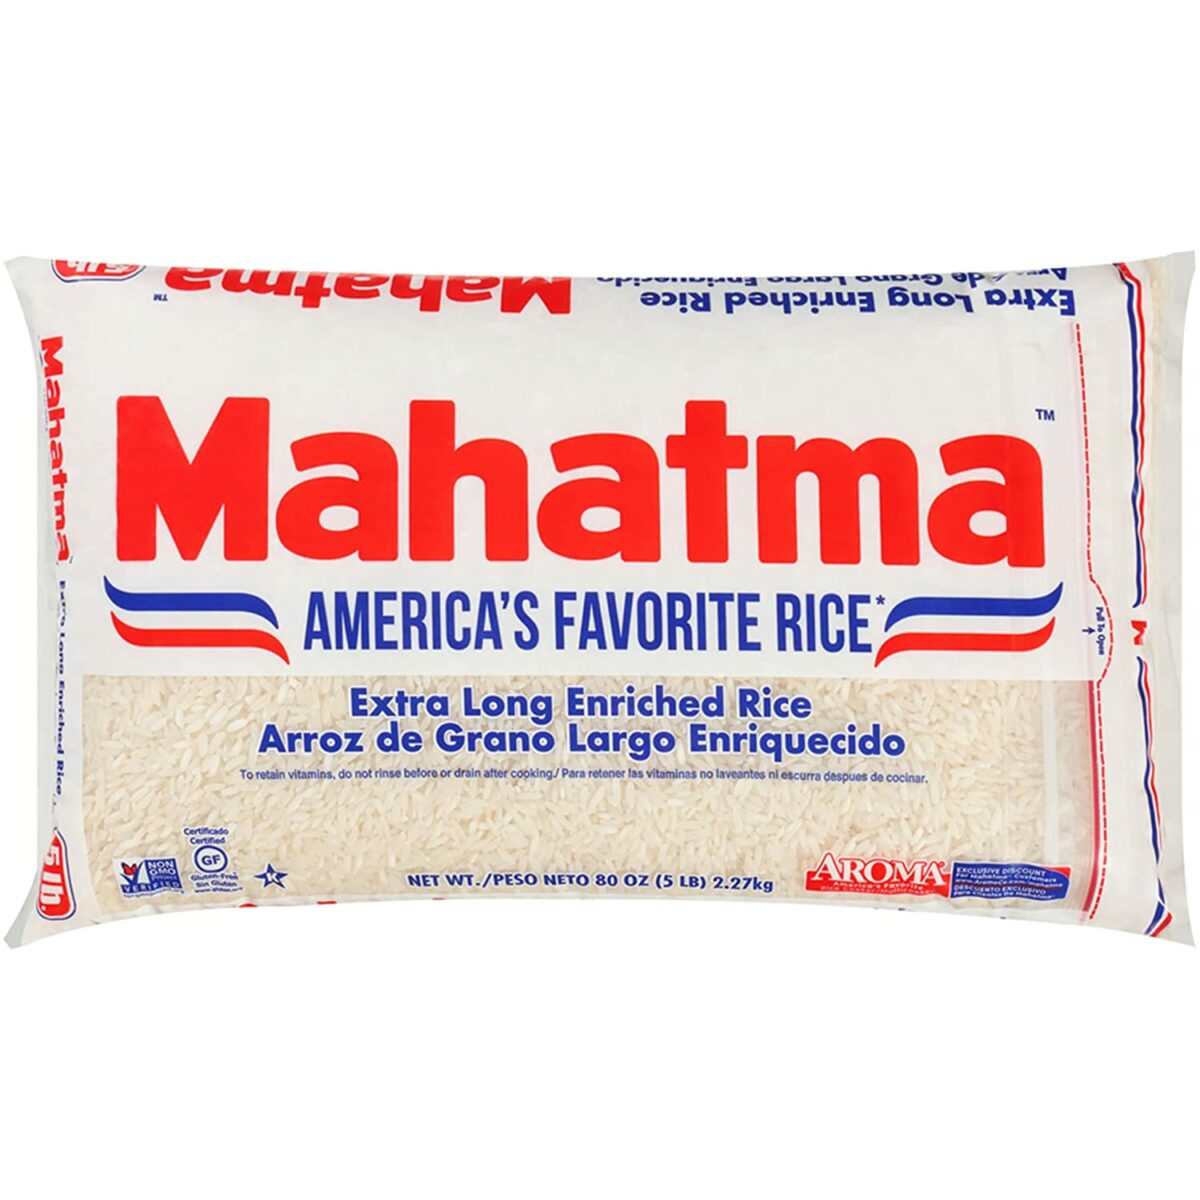 もち米の代用品としてのマハトマ超長粒白米